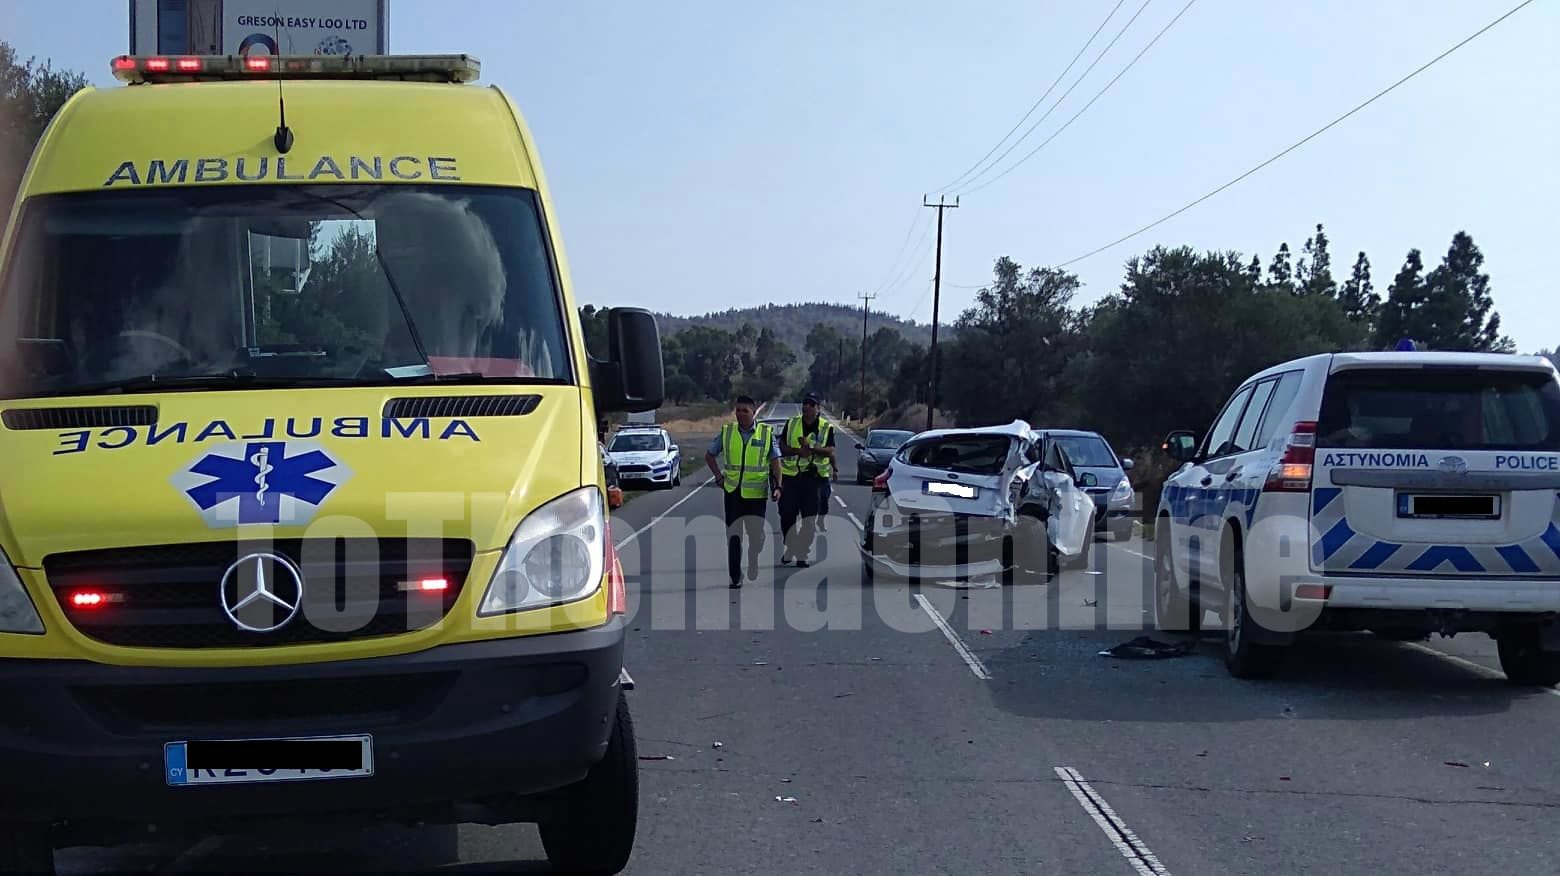 ΠΑΦΟΣ - ΤΡΟΧΑΙΟ: Ανατράπηκε διπλοκάμπινο - Σύγκρουση με άλλο όχημα 